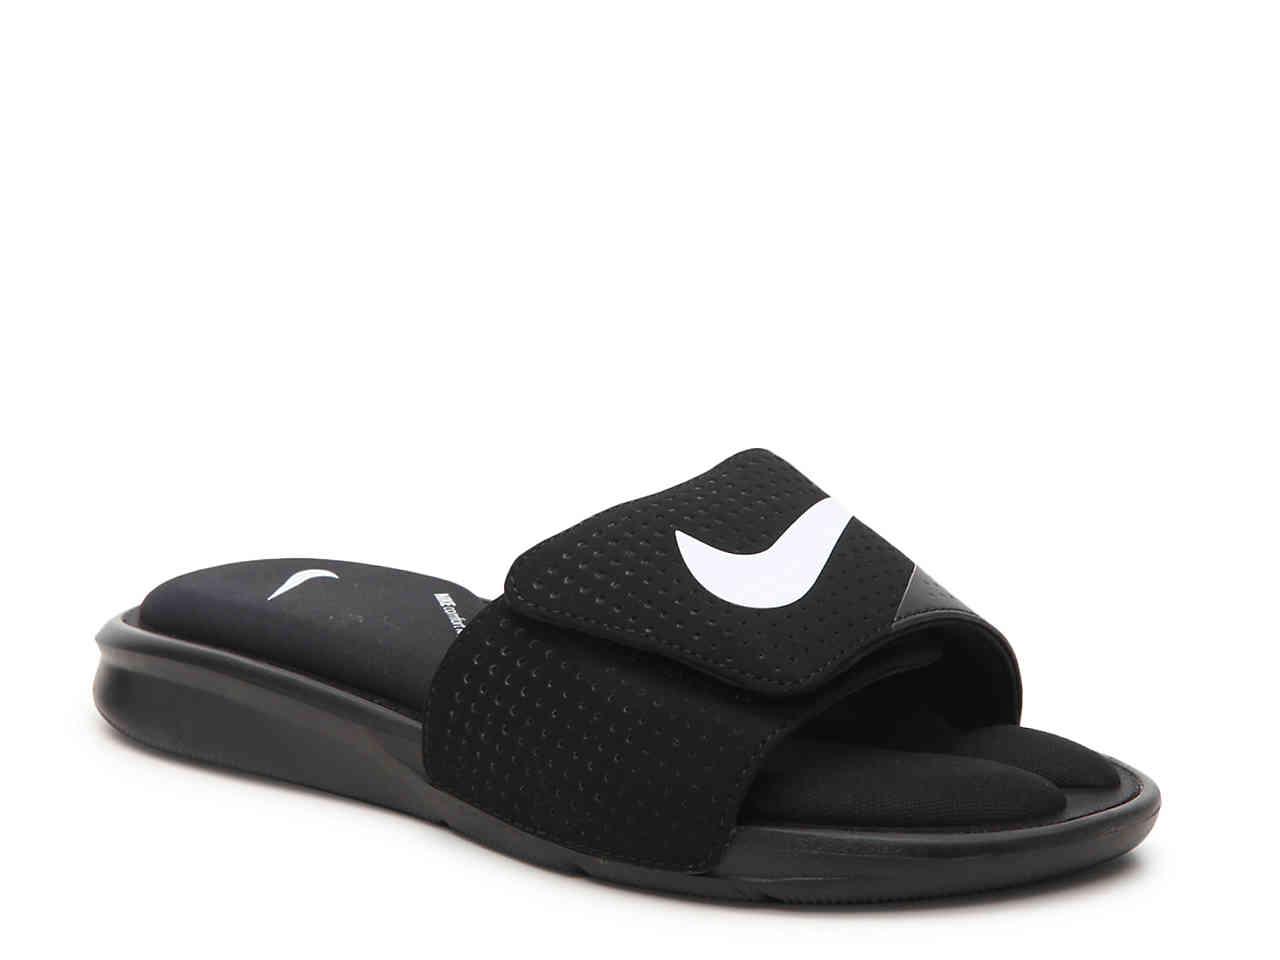 Nike Synthetic Ultra Comfort Slide Sandal in Black/White/Black (Black) for  Men - Lyst